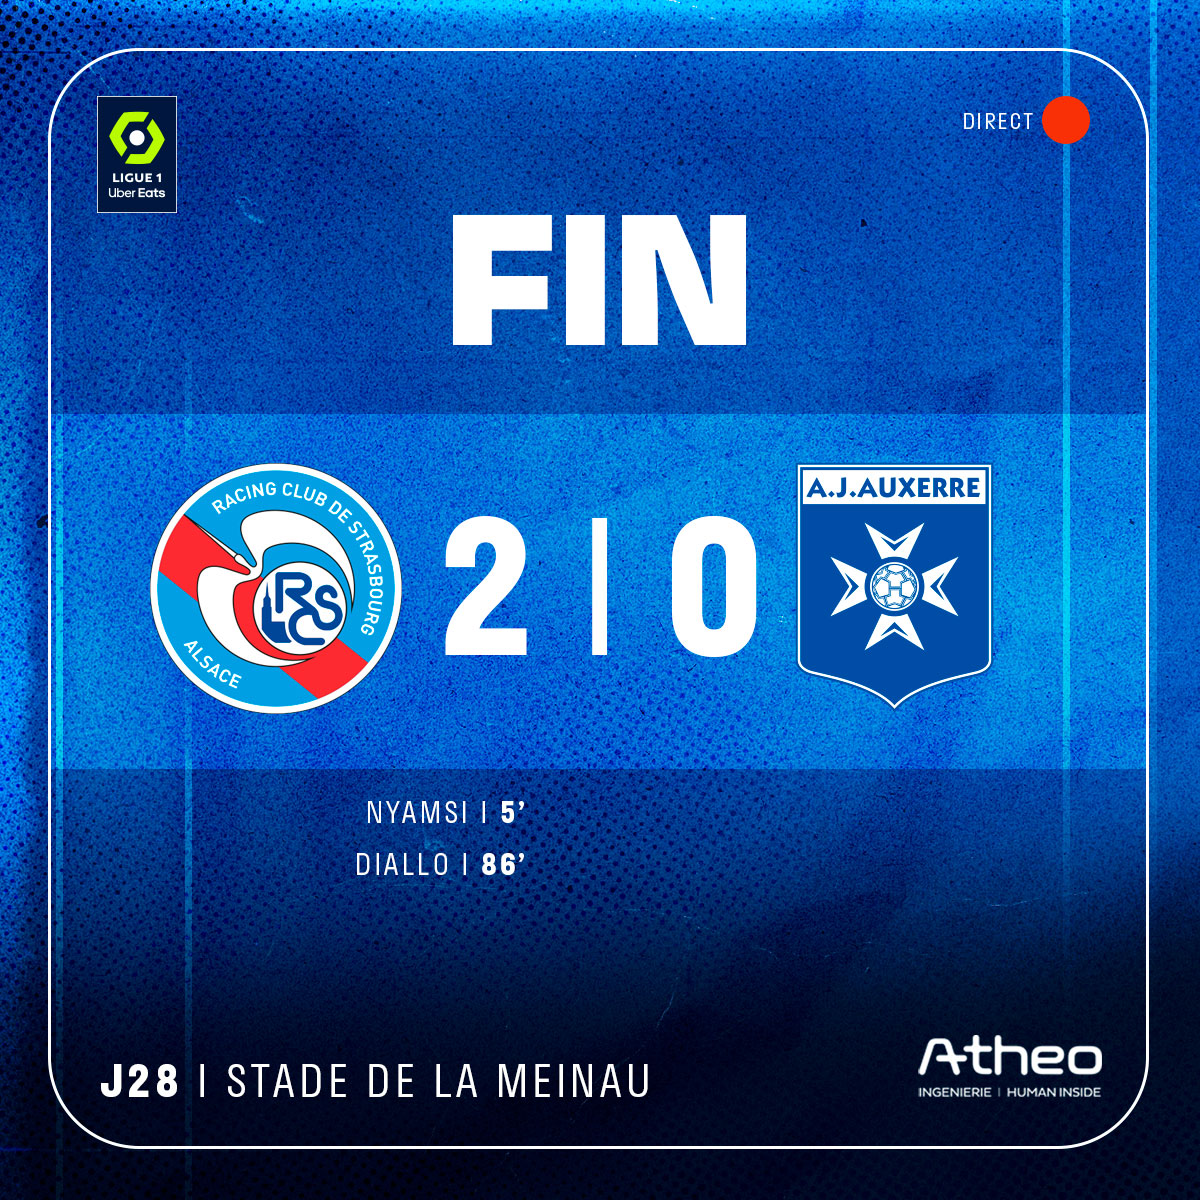 🏁 C'est fini !
Grosse victoire pour nos Bleu&Blanc qui prennent 3 points ultra importants !!

BRAVO MESSIEURS ! 💙

#RCSAJA (2-0)